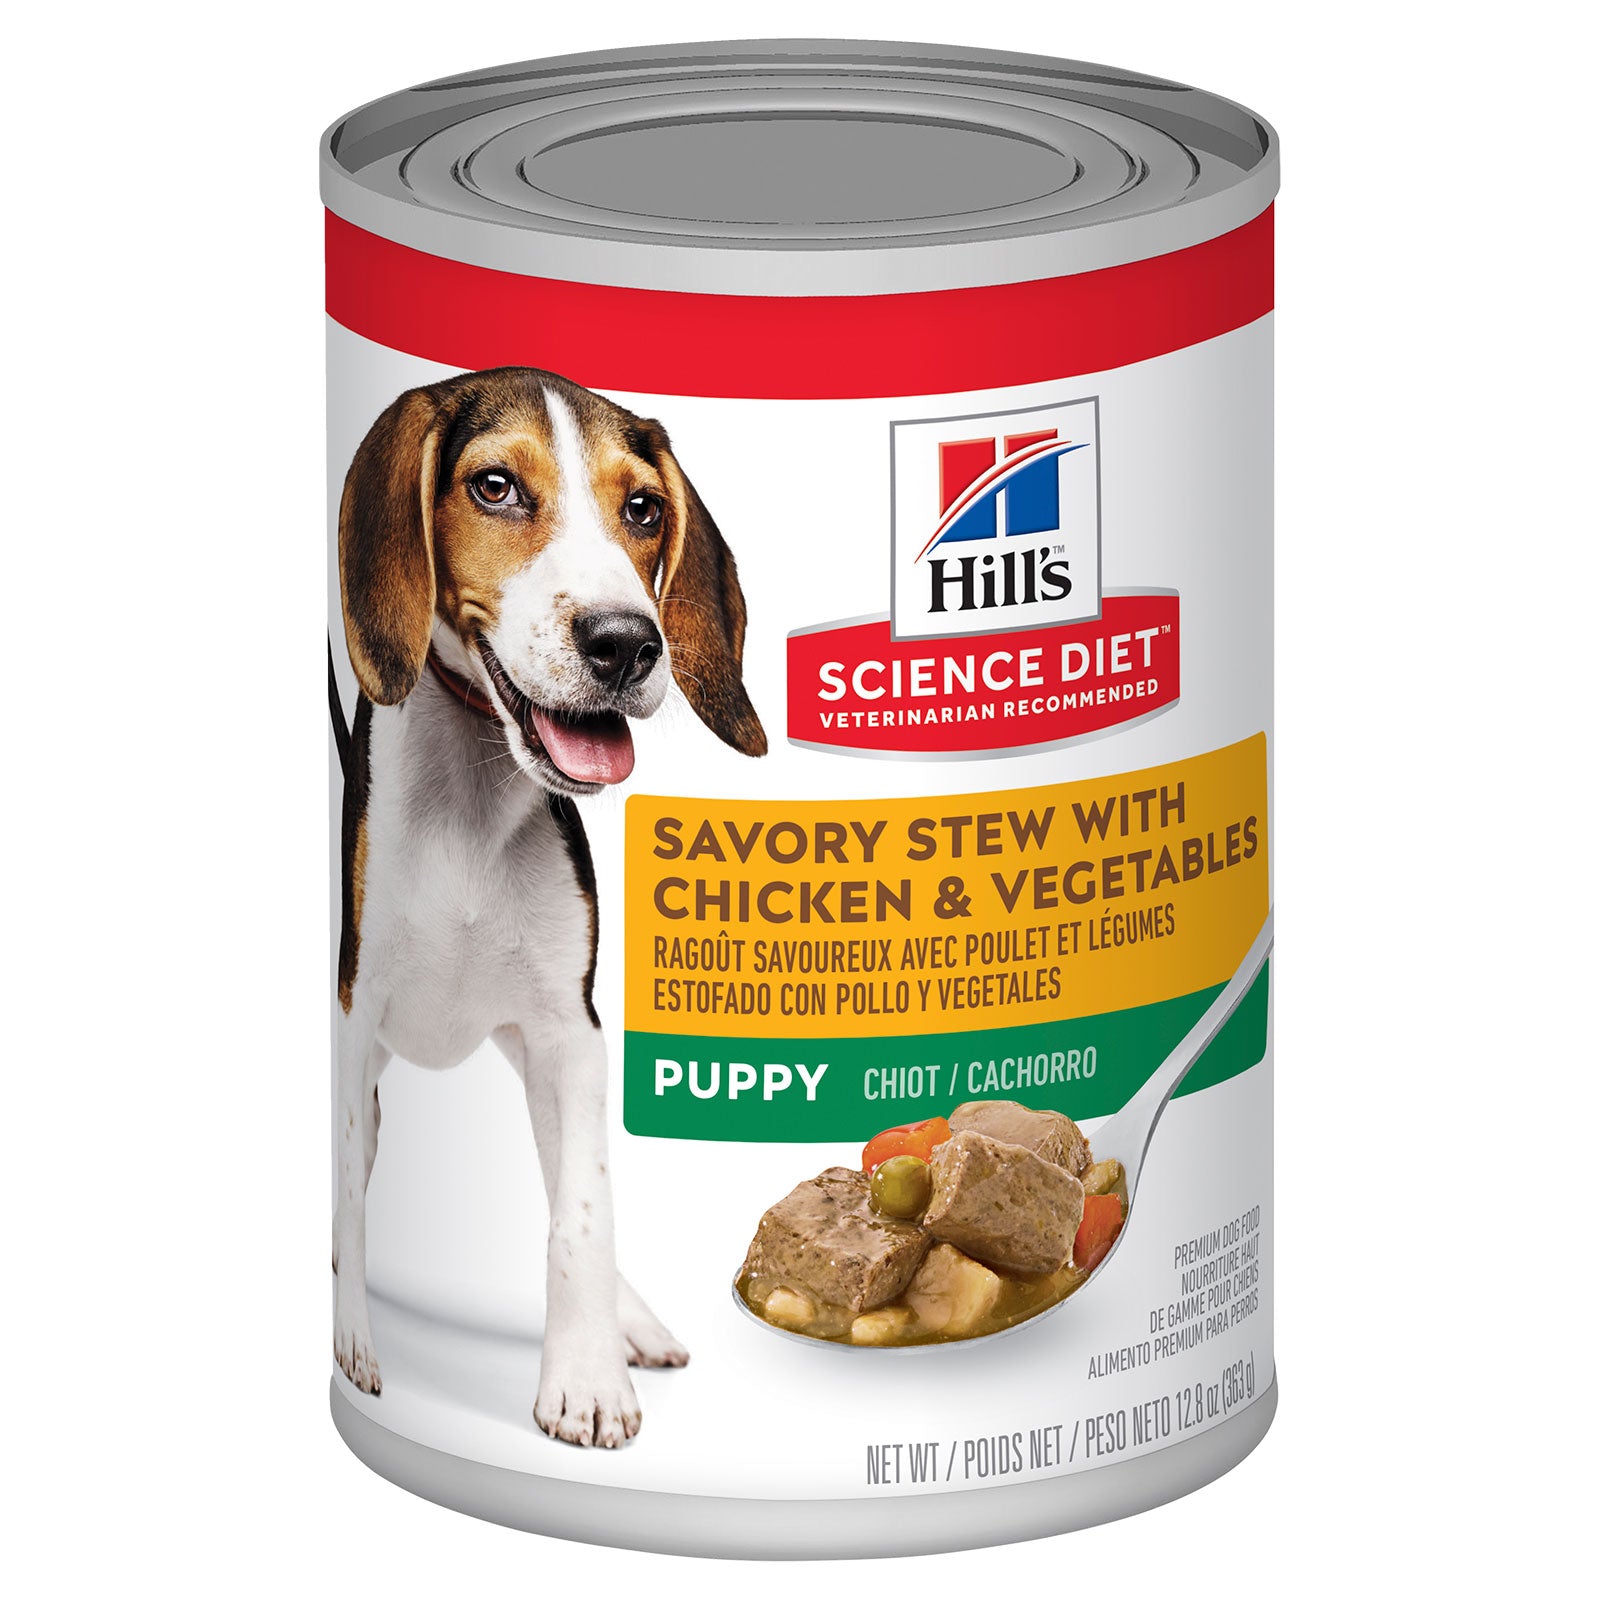 Hill's Science Diet Dog Food Can Puppy Savoury Stew Chicken & Vegetables